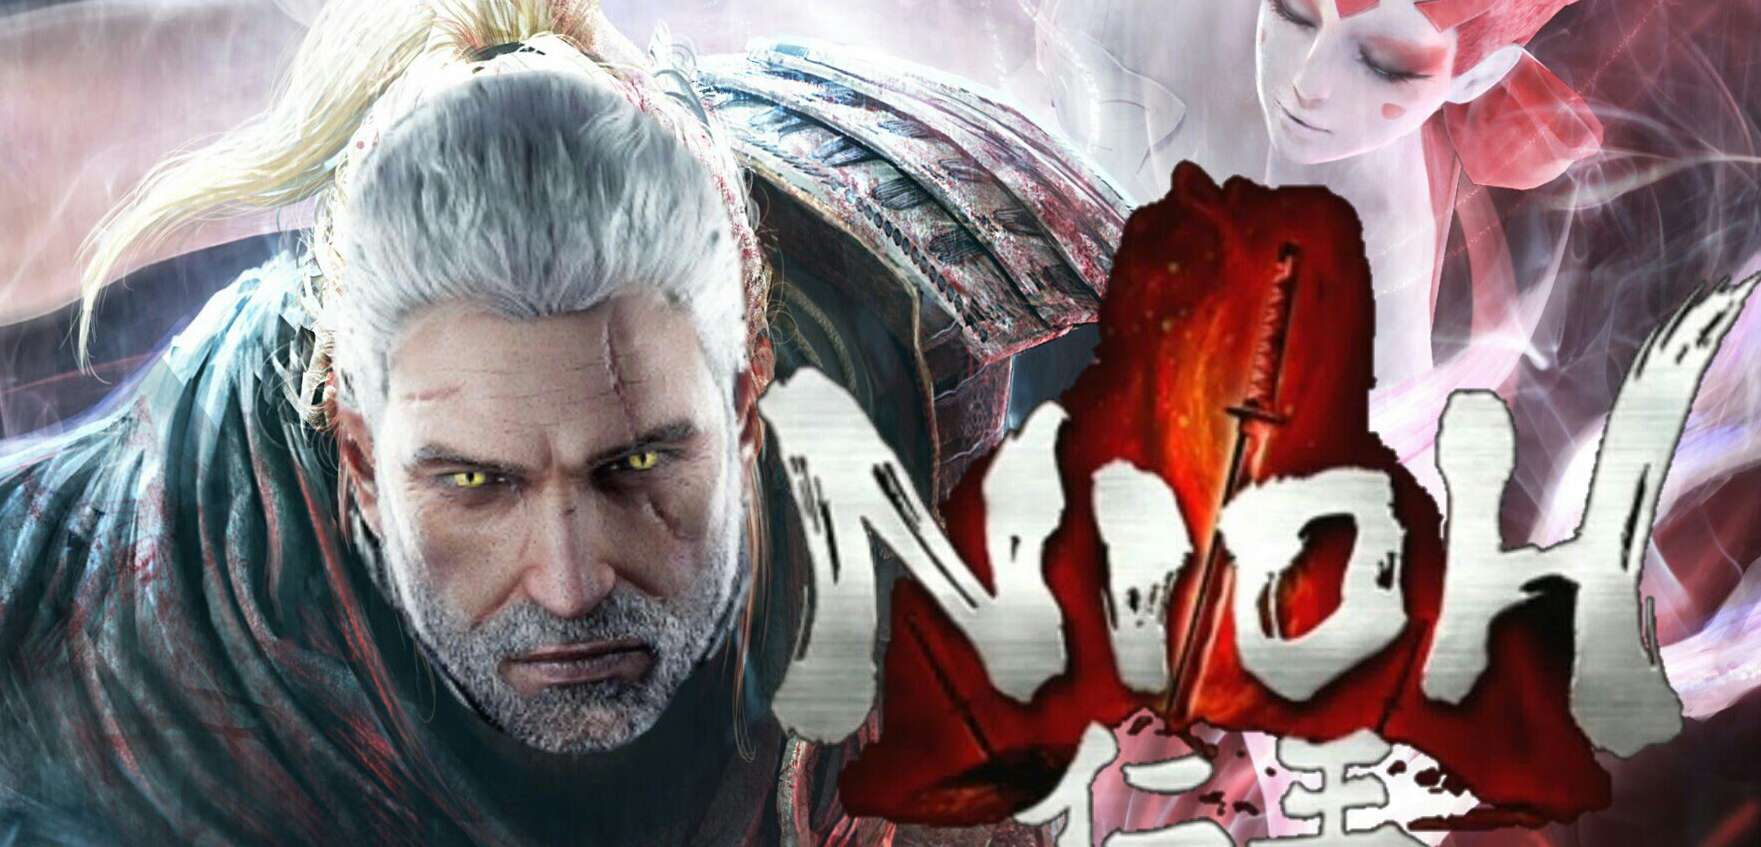 Japoński Geralt rządzi. Nioh zgarnia mocne oceny!